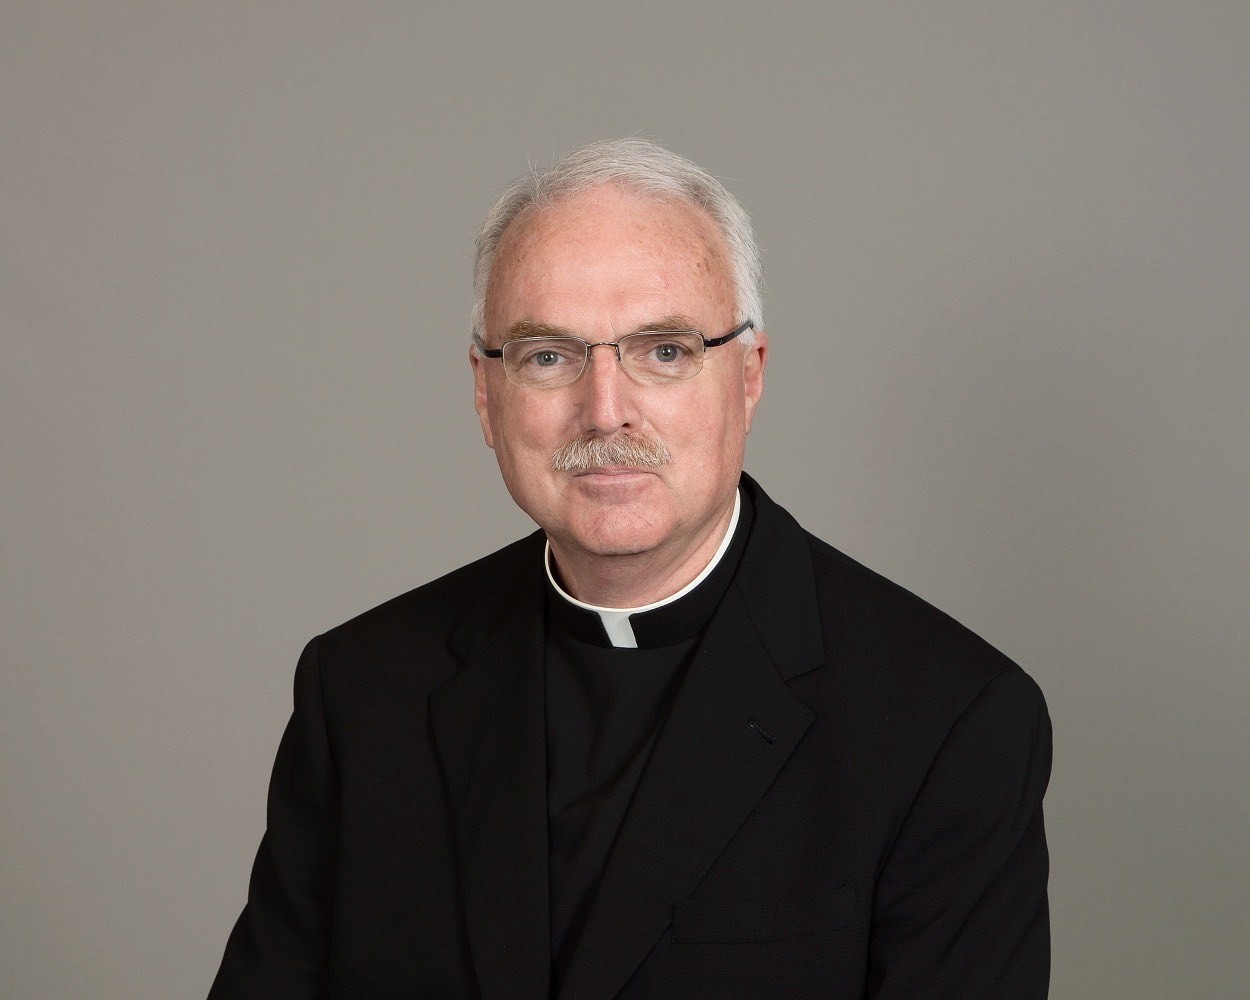 Father Tim Fitzgerald